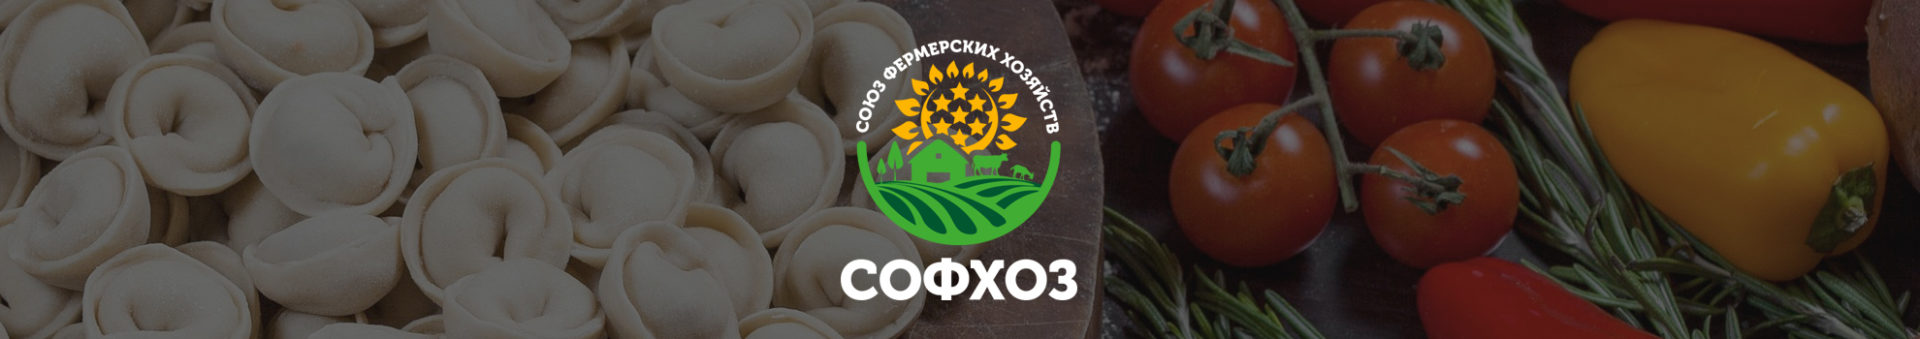 Разработка дизайна логотипа и бренд-бука компании «СОФХОЗ»